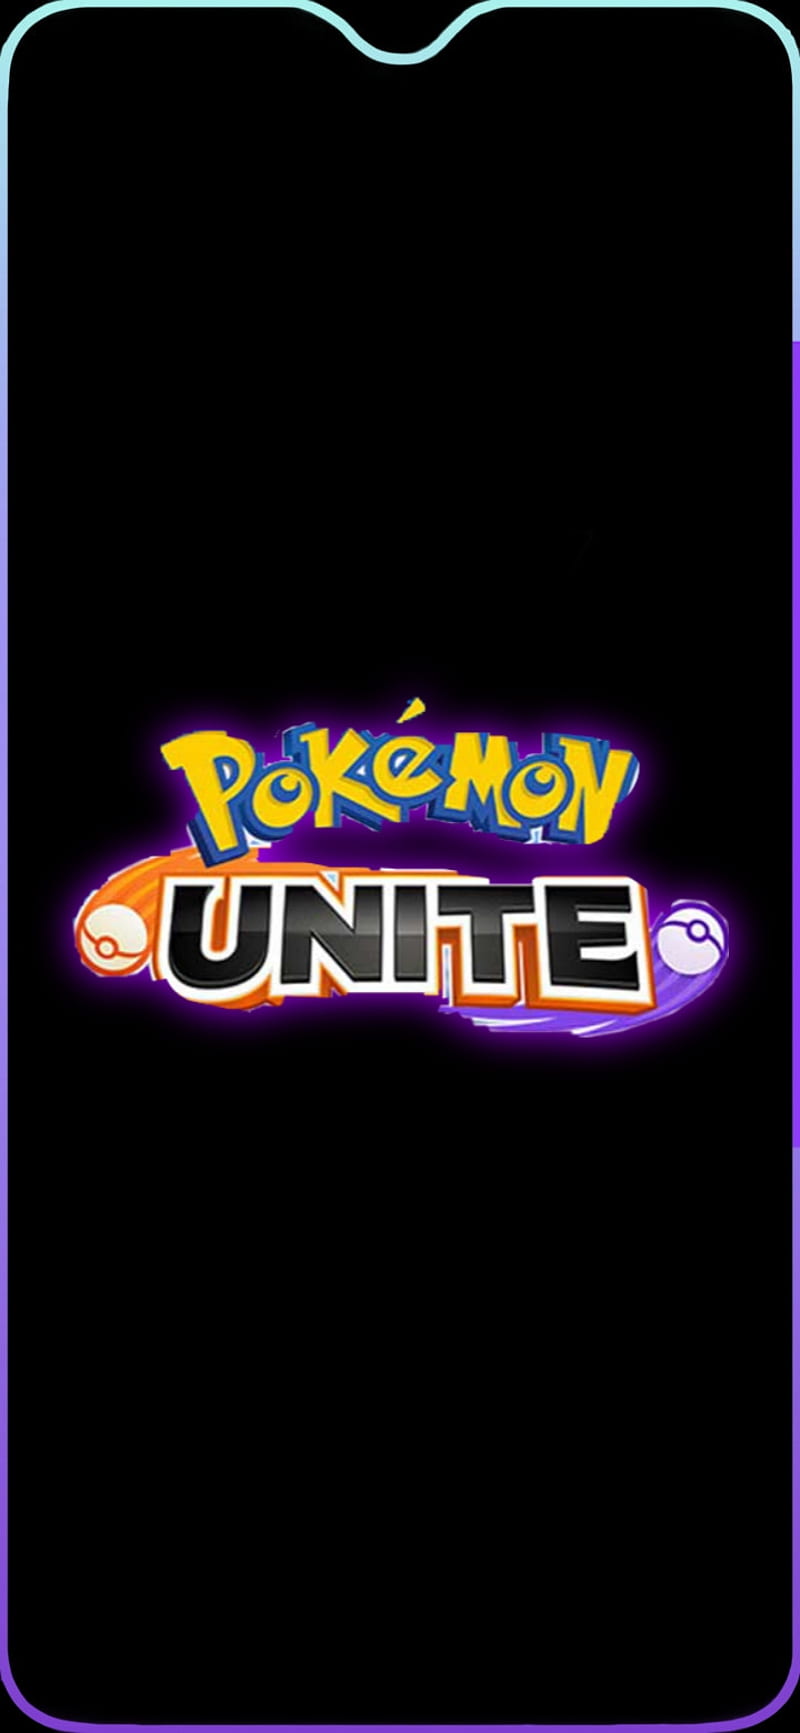 Pokémon Unite!, border, iPhone, pokemon border, xiaomi, samsung, one plus, Pokémon Unite, motorola, pokemon logo, one plus 6, HD phone wallpaper